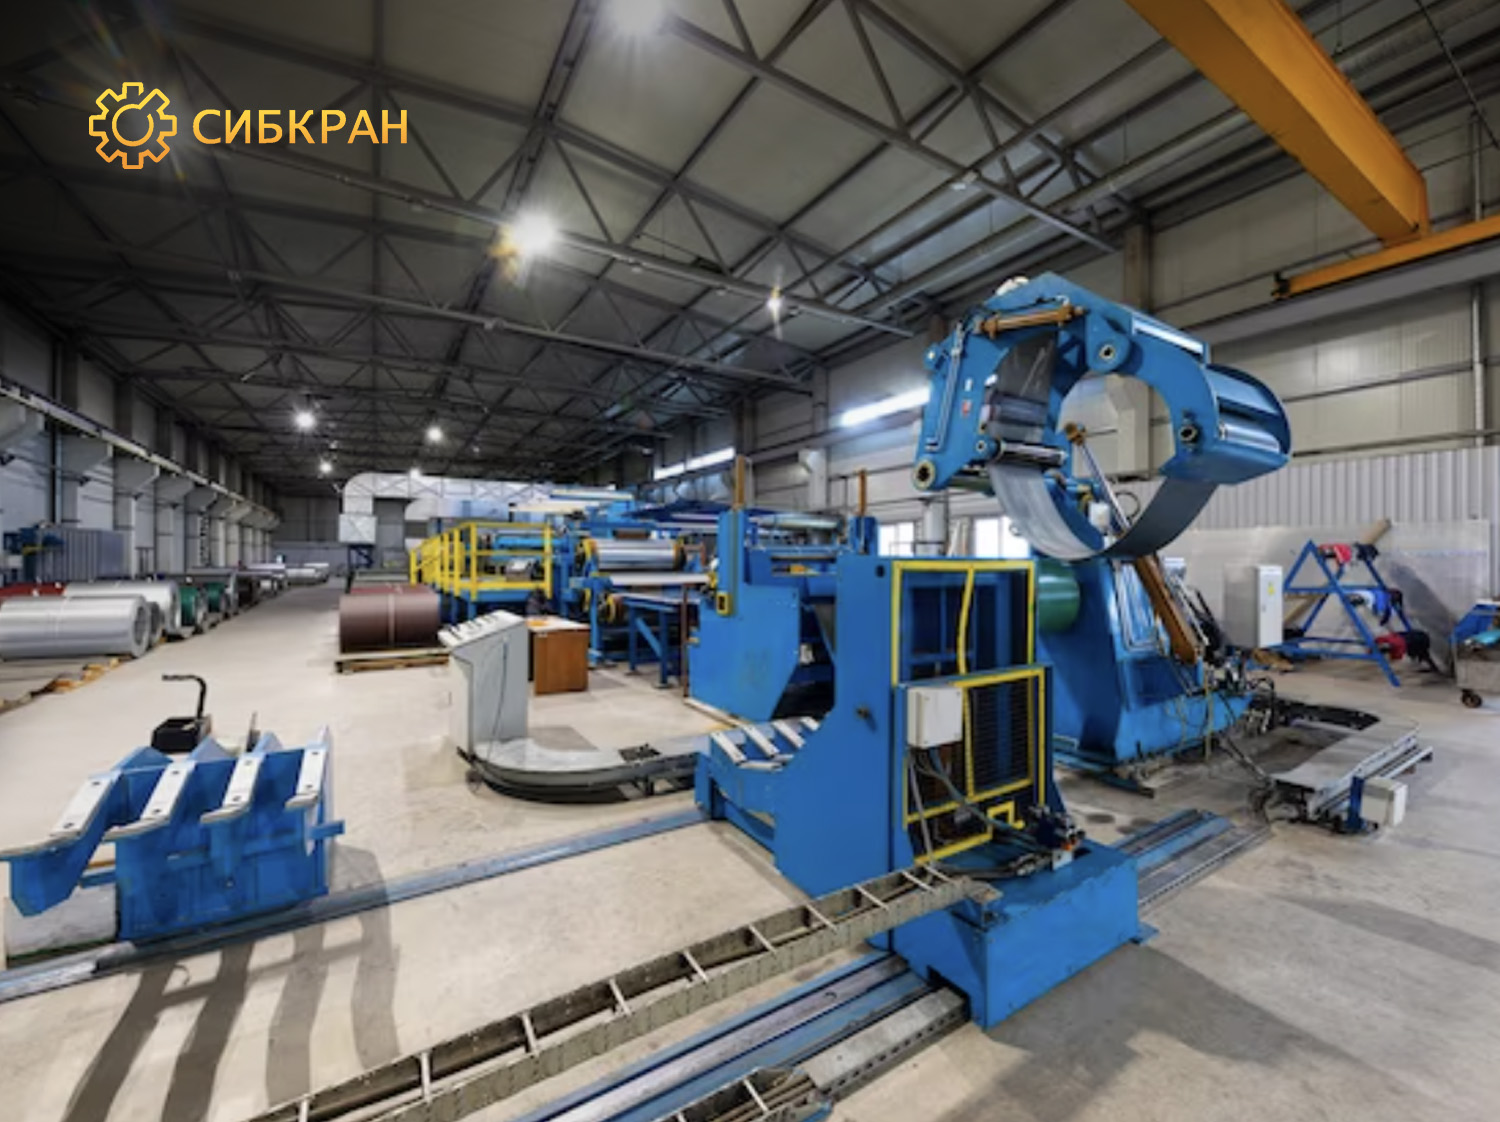 Изготовление и установка кран-балки опорной г/п 1 тонна пролет 13,5 метров в г. Иркутск